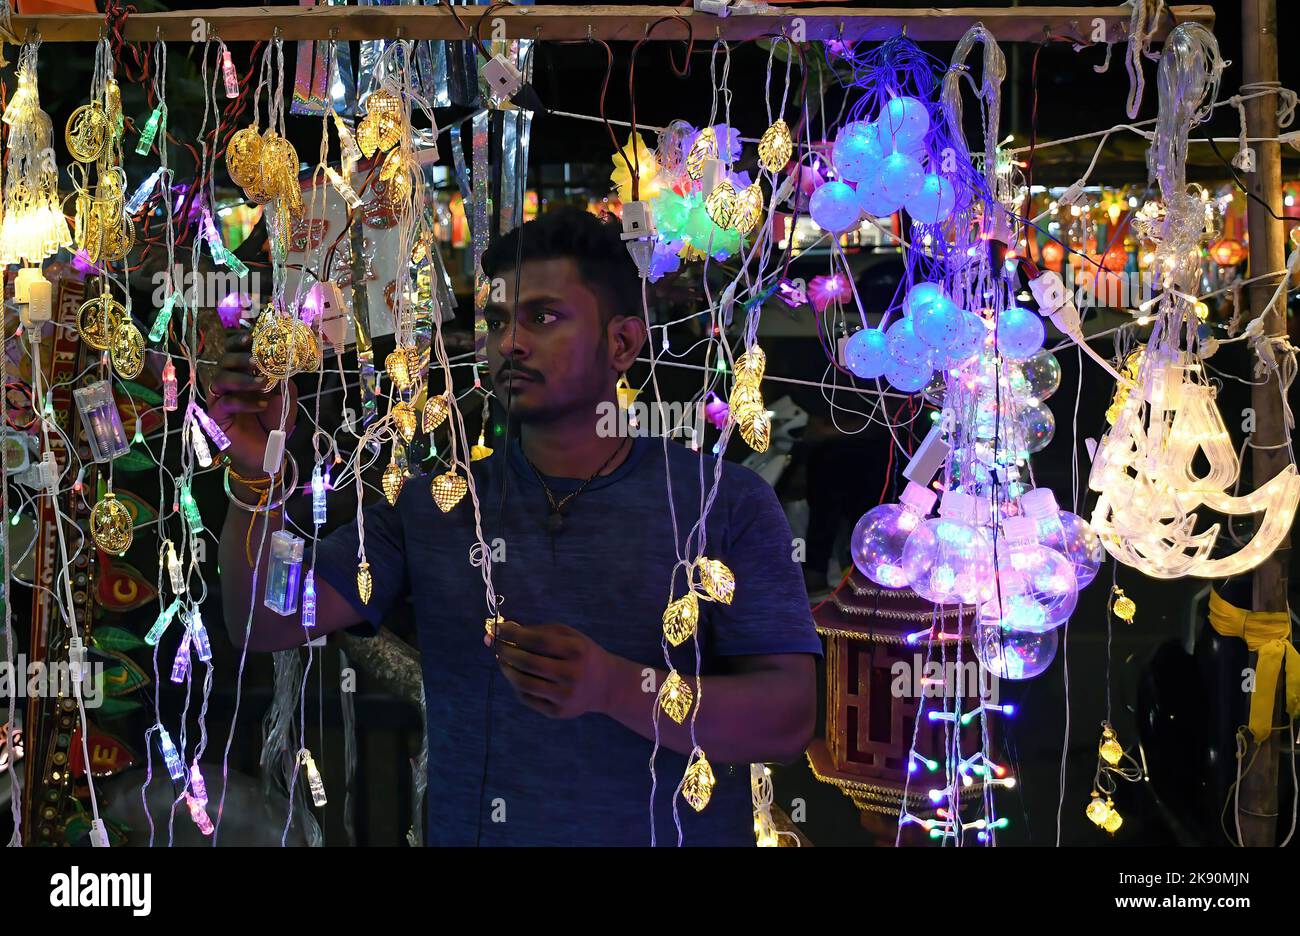 Ein Mann arrangiert Lichter, die auf den Straßen von Mumbai zum Verkauf gehalten werden. Diwali wird als Lichterfest gefeiert, Hindus schmücken ihr Zuhause mit irdenen Lampen und bunten Laternen in verschiedenen Formen und Größen. Diwali symbolisiert den Sieg des Lichts über die Dunkelheit. Stockfoto